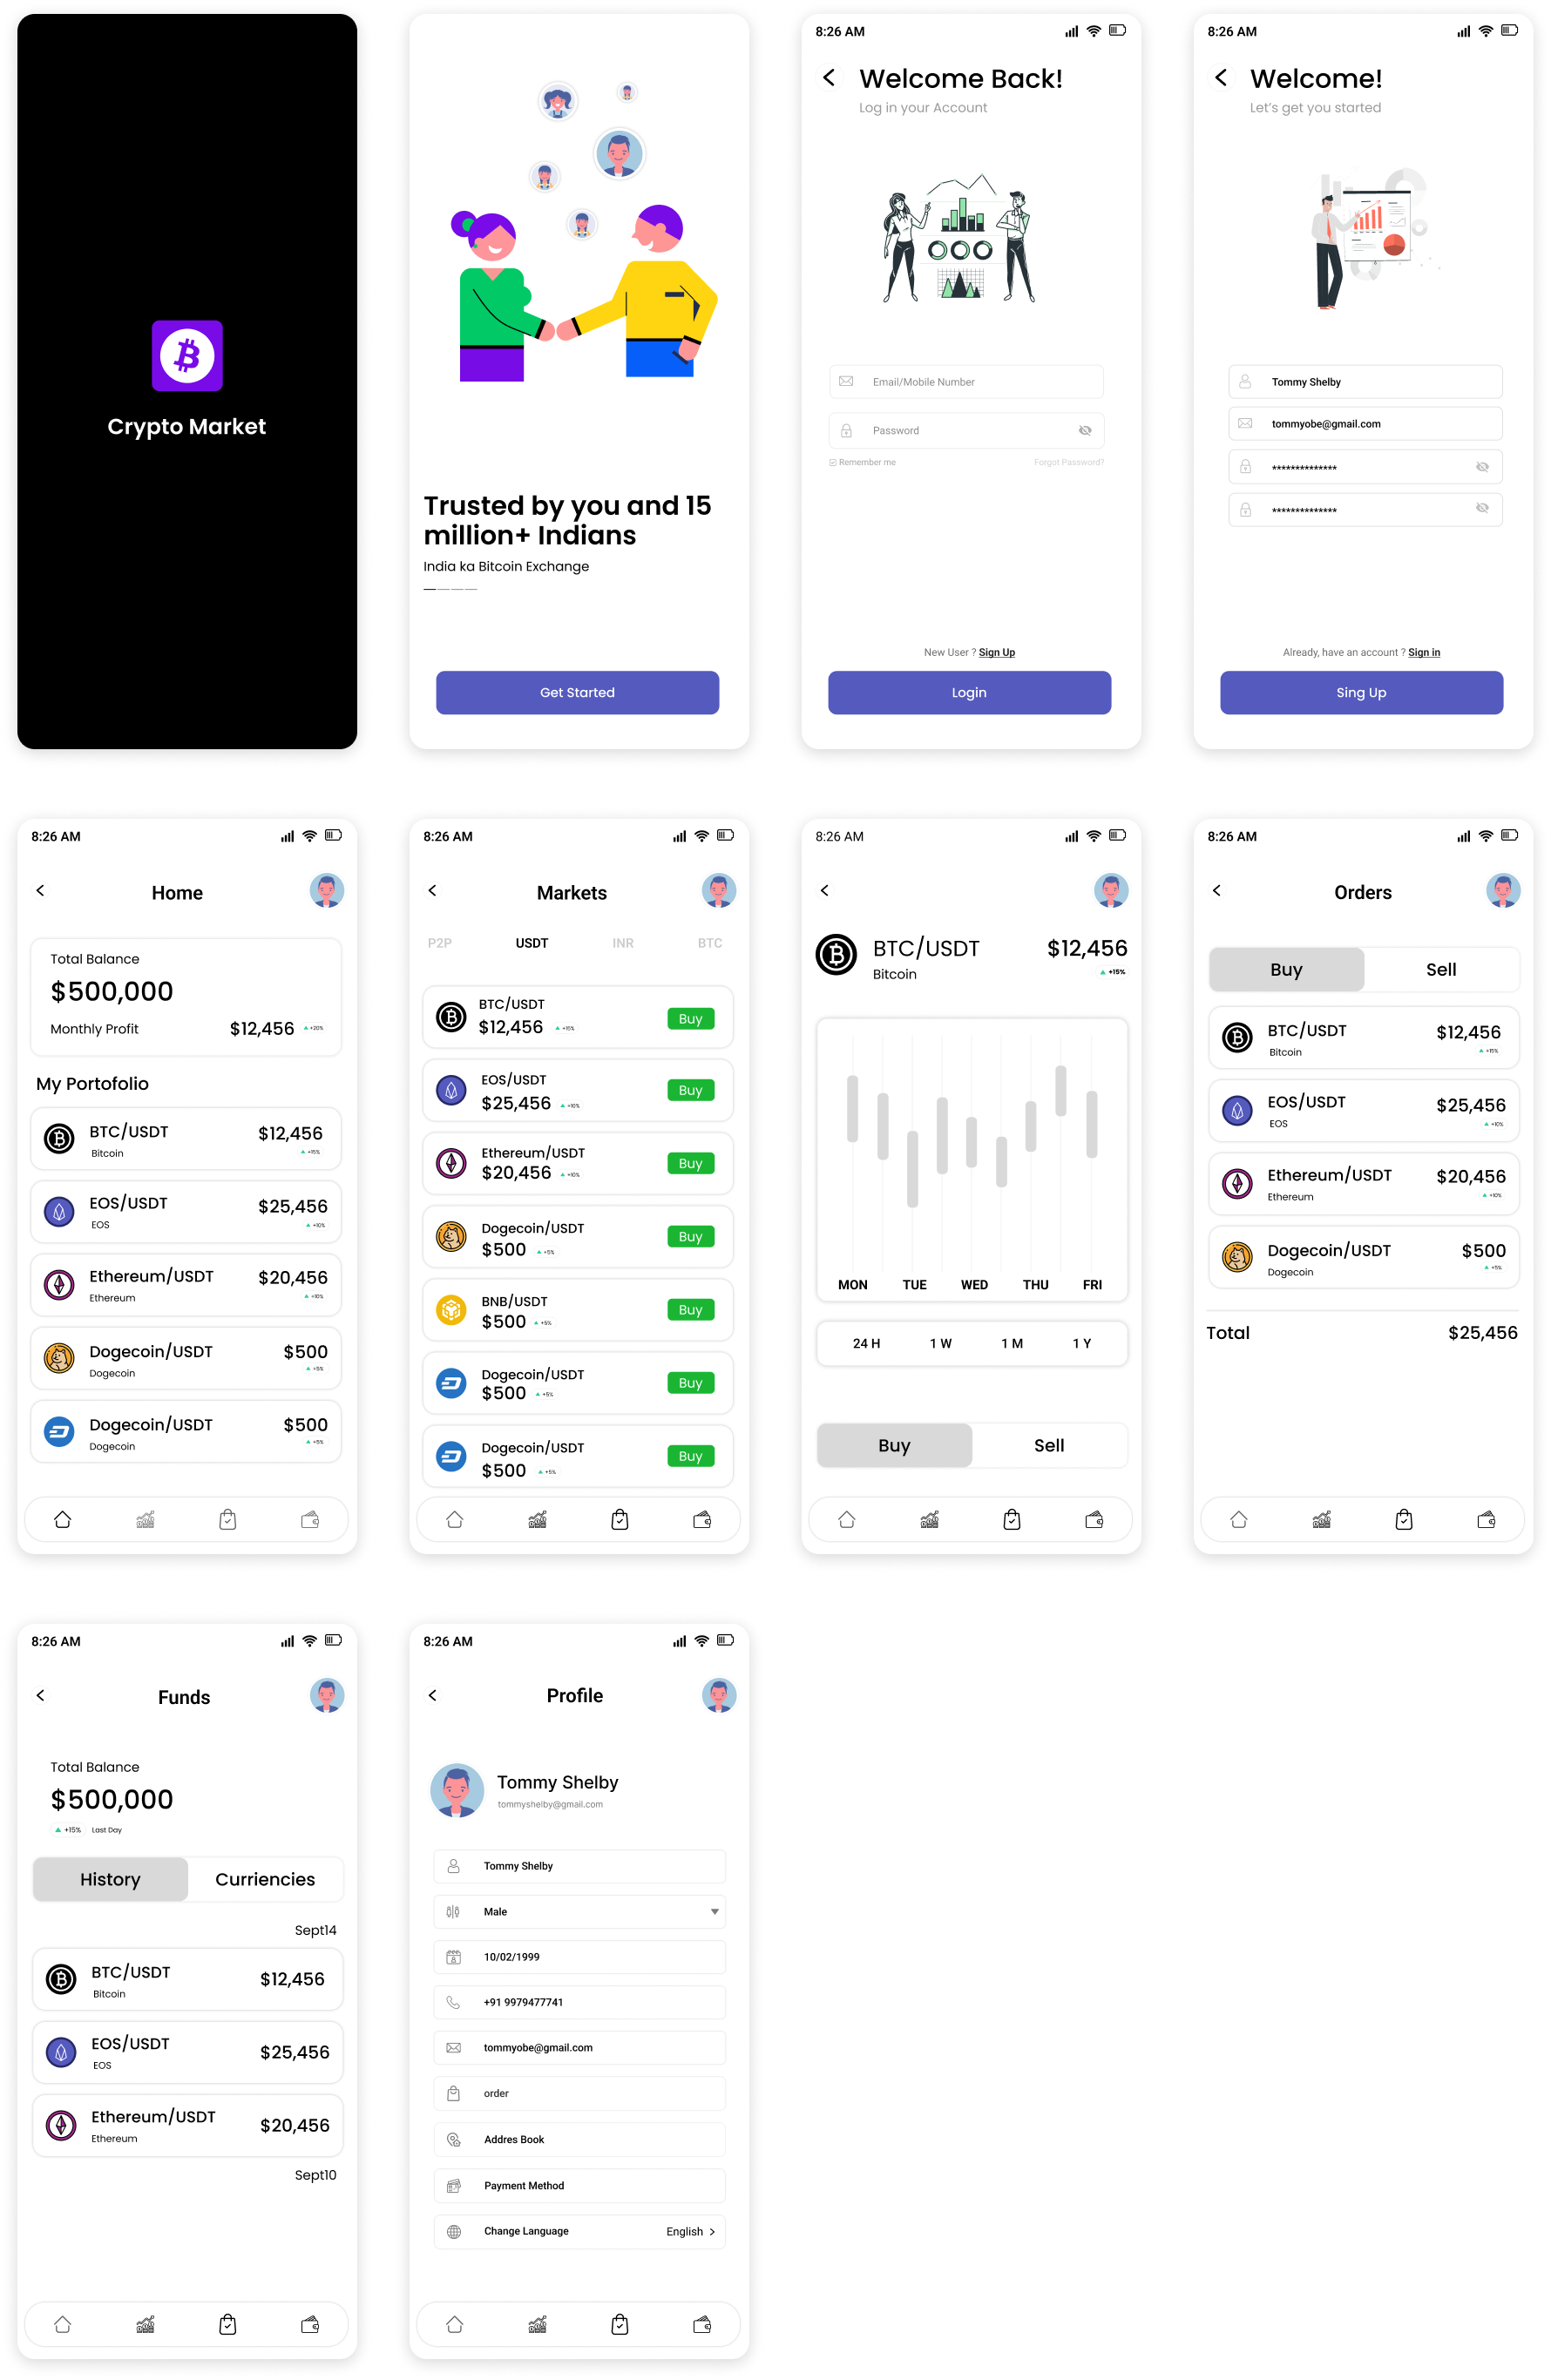 加密货币交易平台app ui: 专业的加密货币交易平台app界面设计素材下载 figma格式-UI/UX-到位啦UI